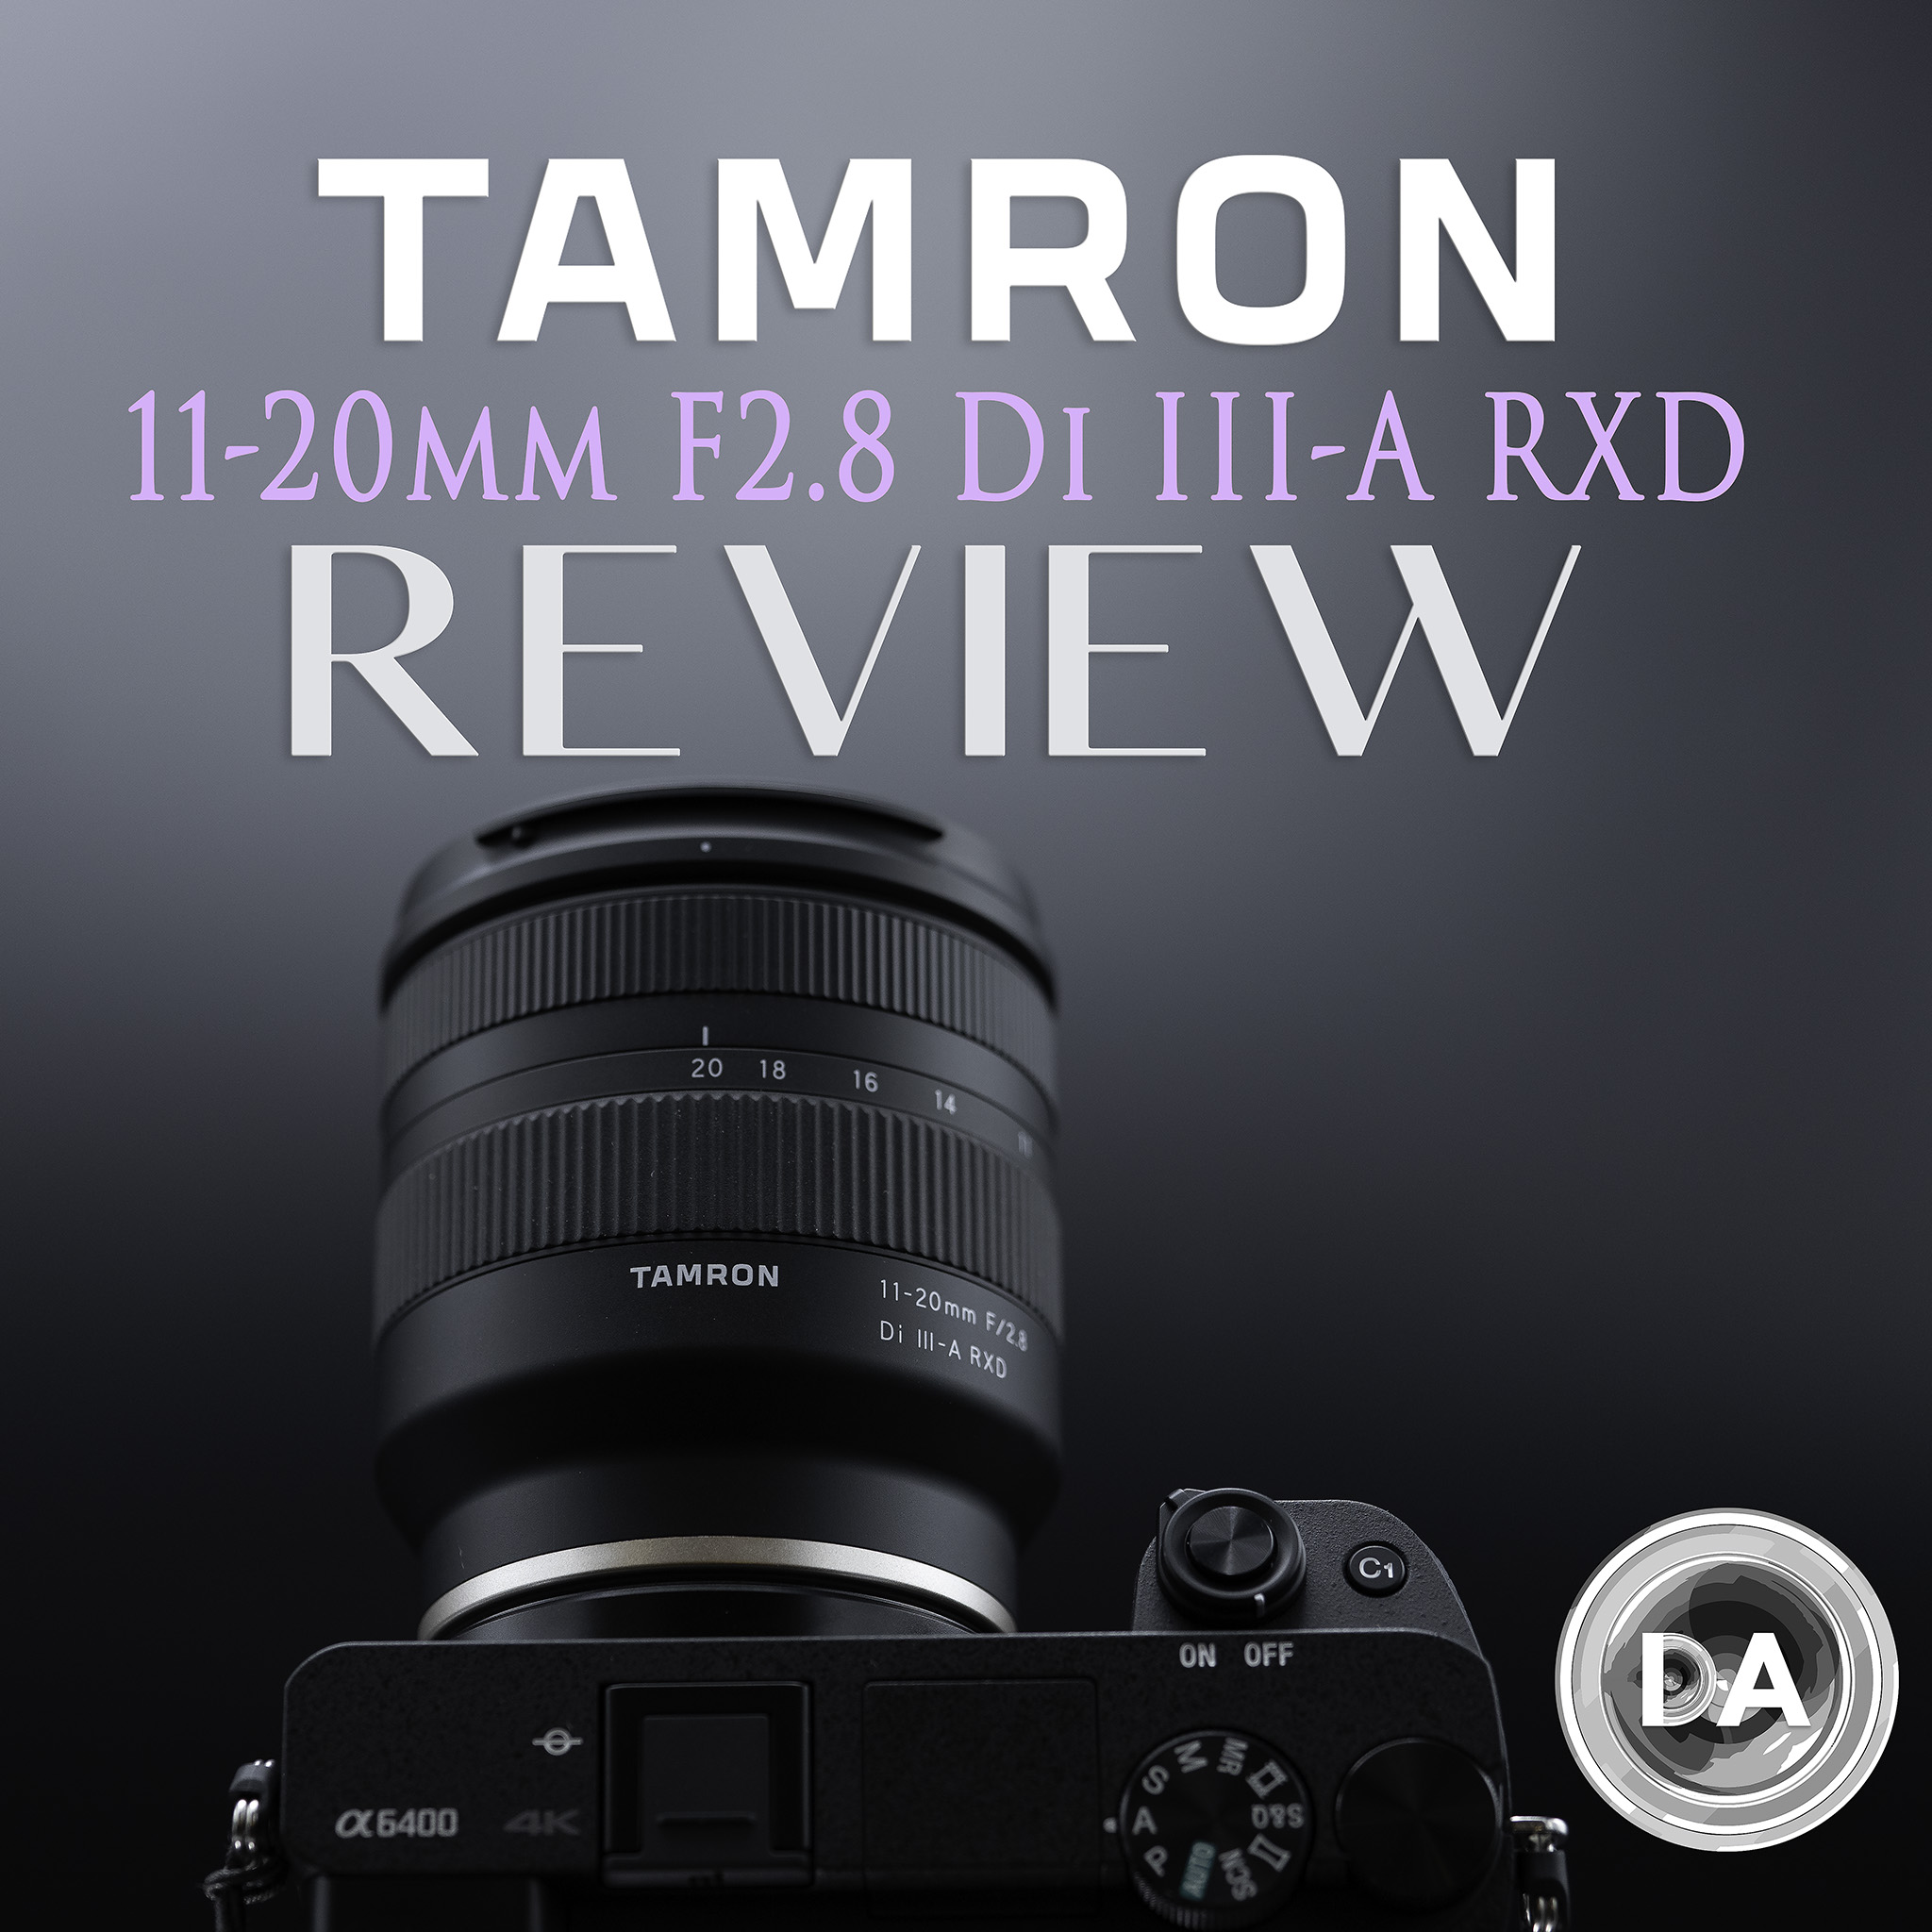 Tamron 11-20mm F2.8 RXD (B060) Review - DustinAbbott.net